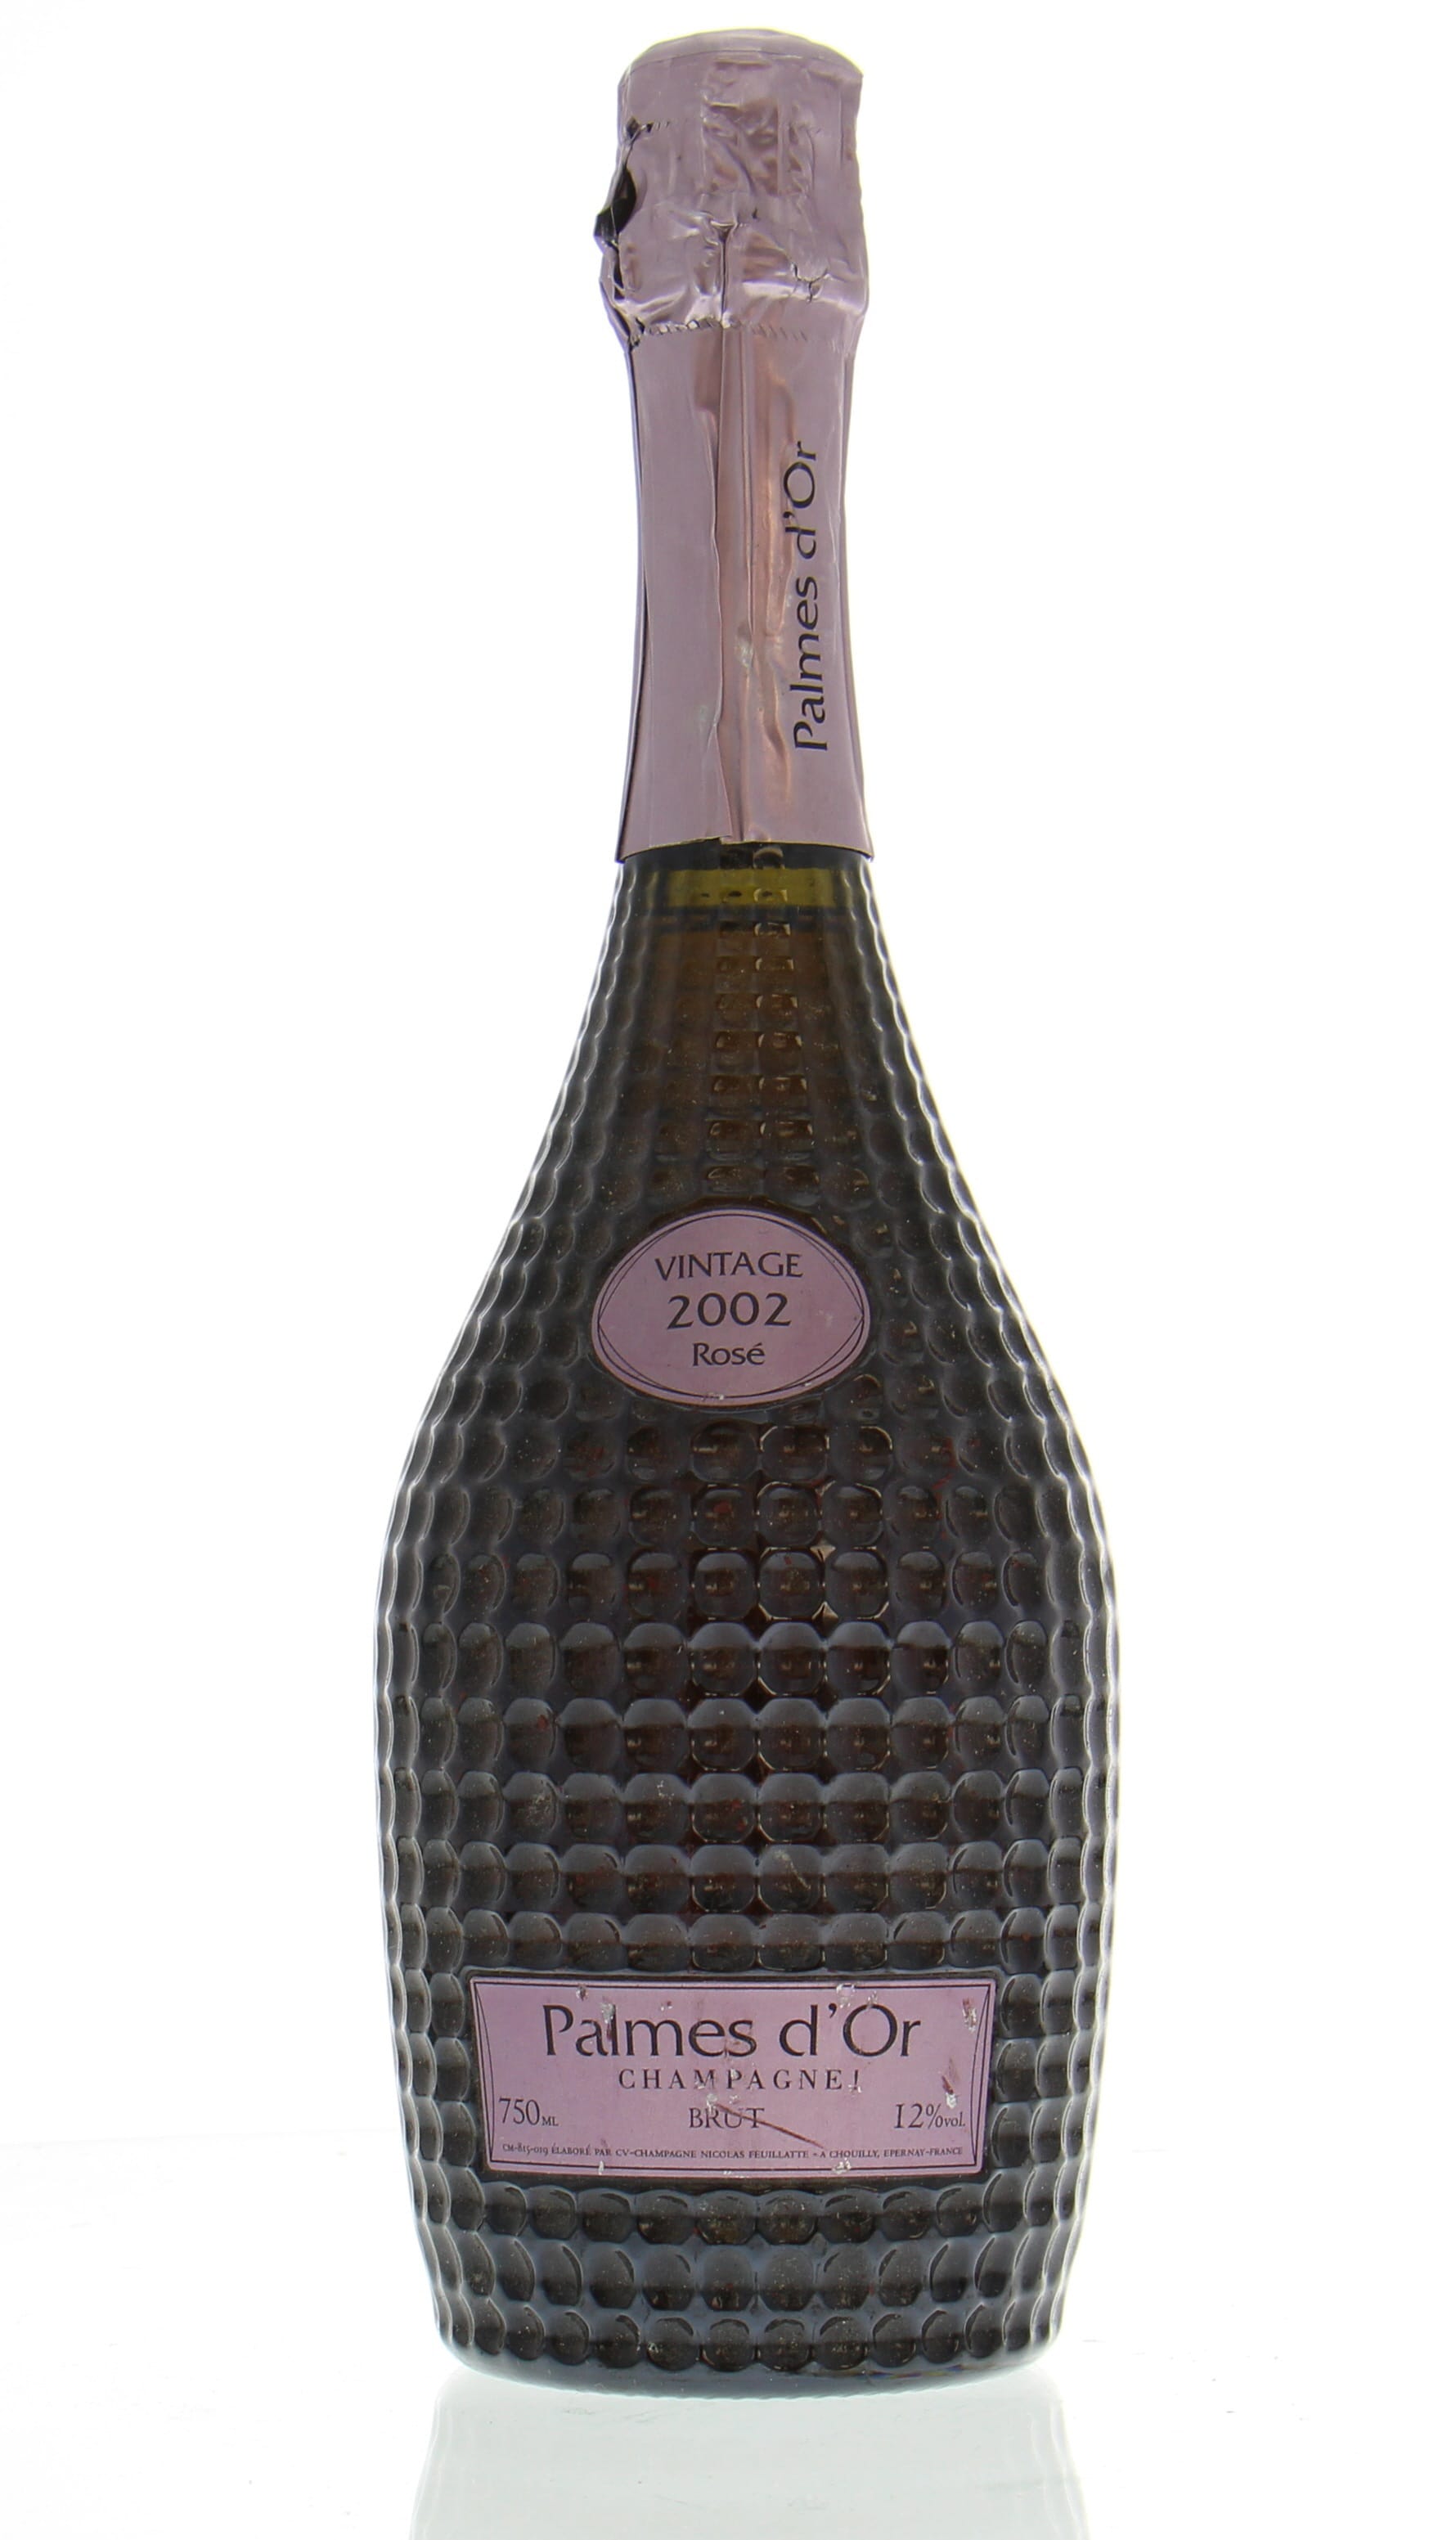 Nicolas Feuillatte - Brut Rosé Champagne Cuvée Palmes d'Or 2002 Perfect